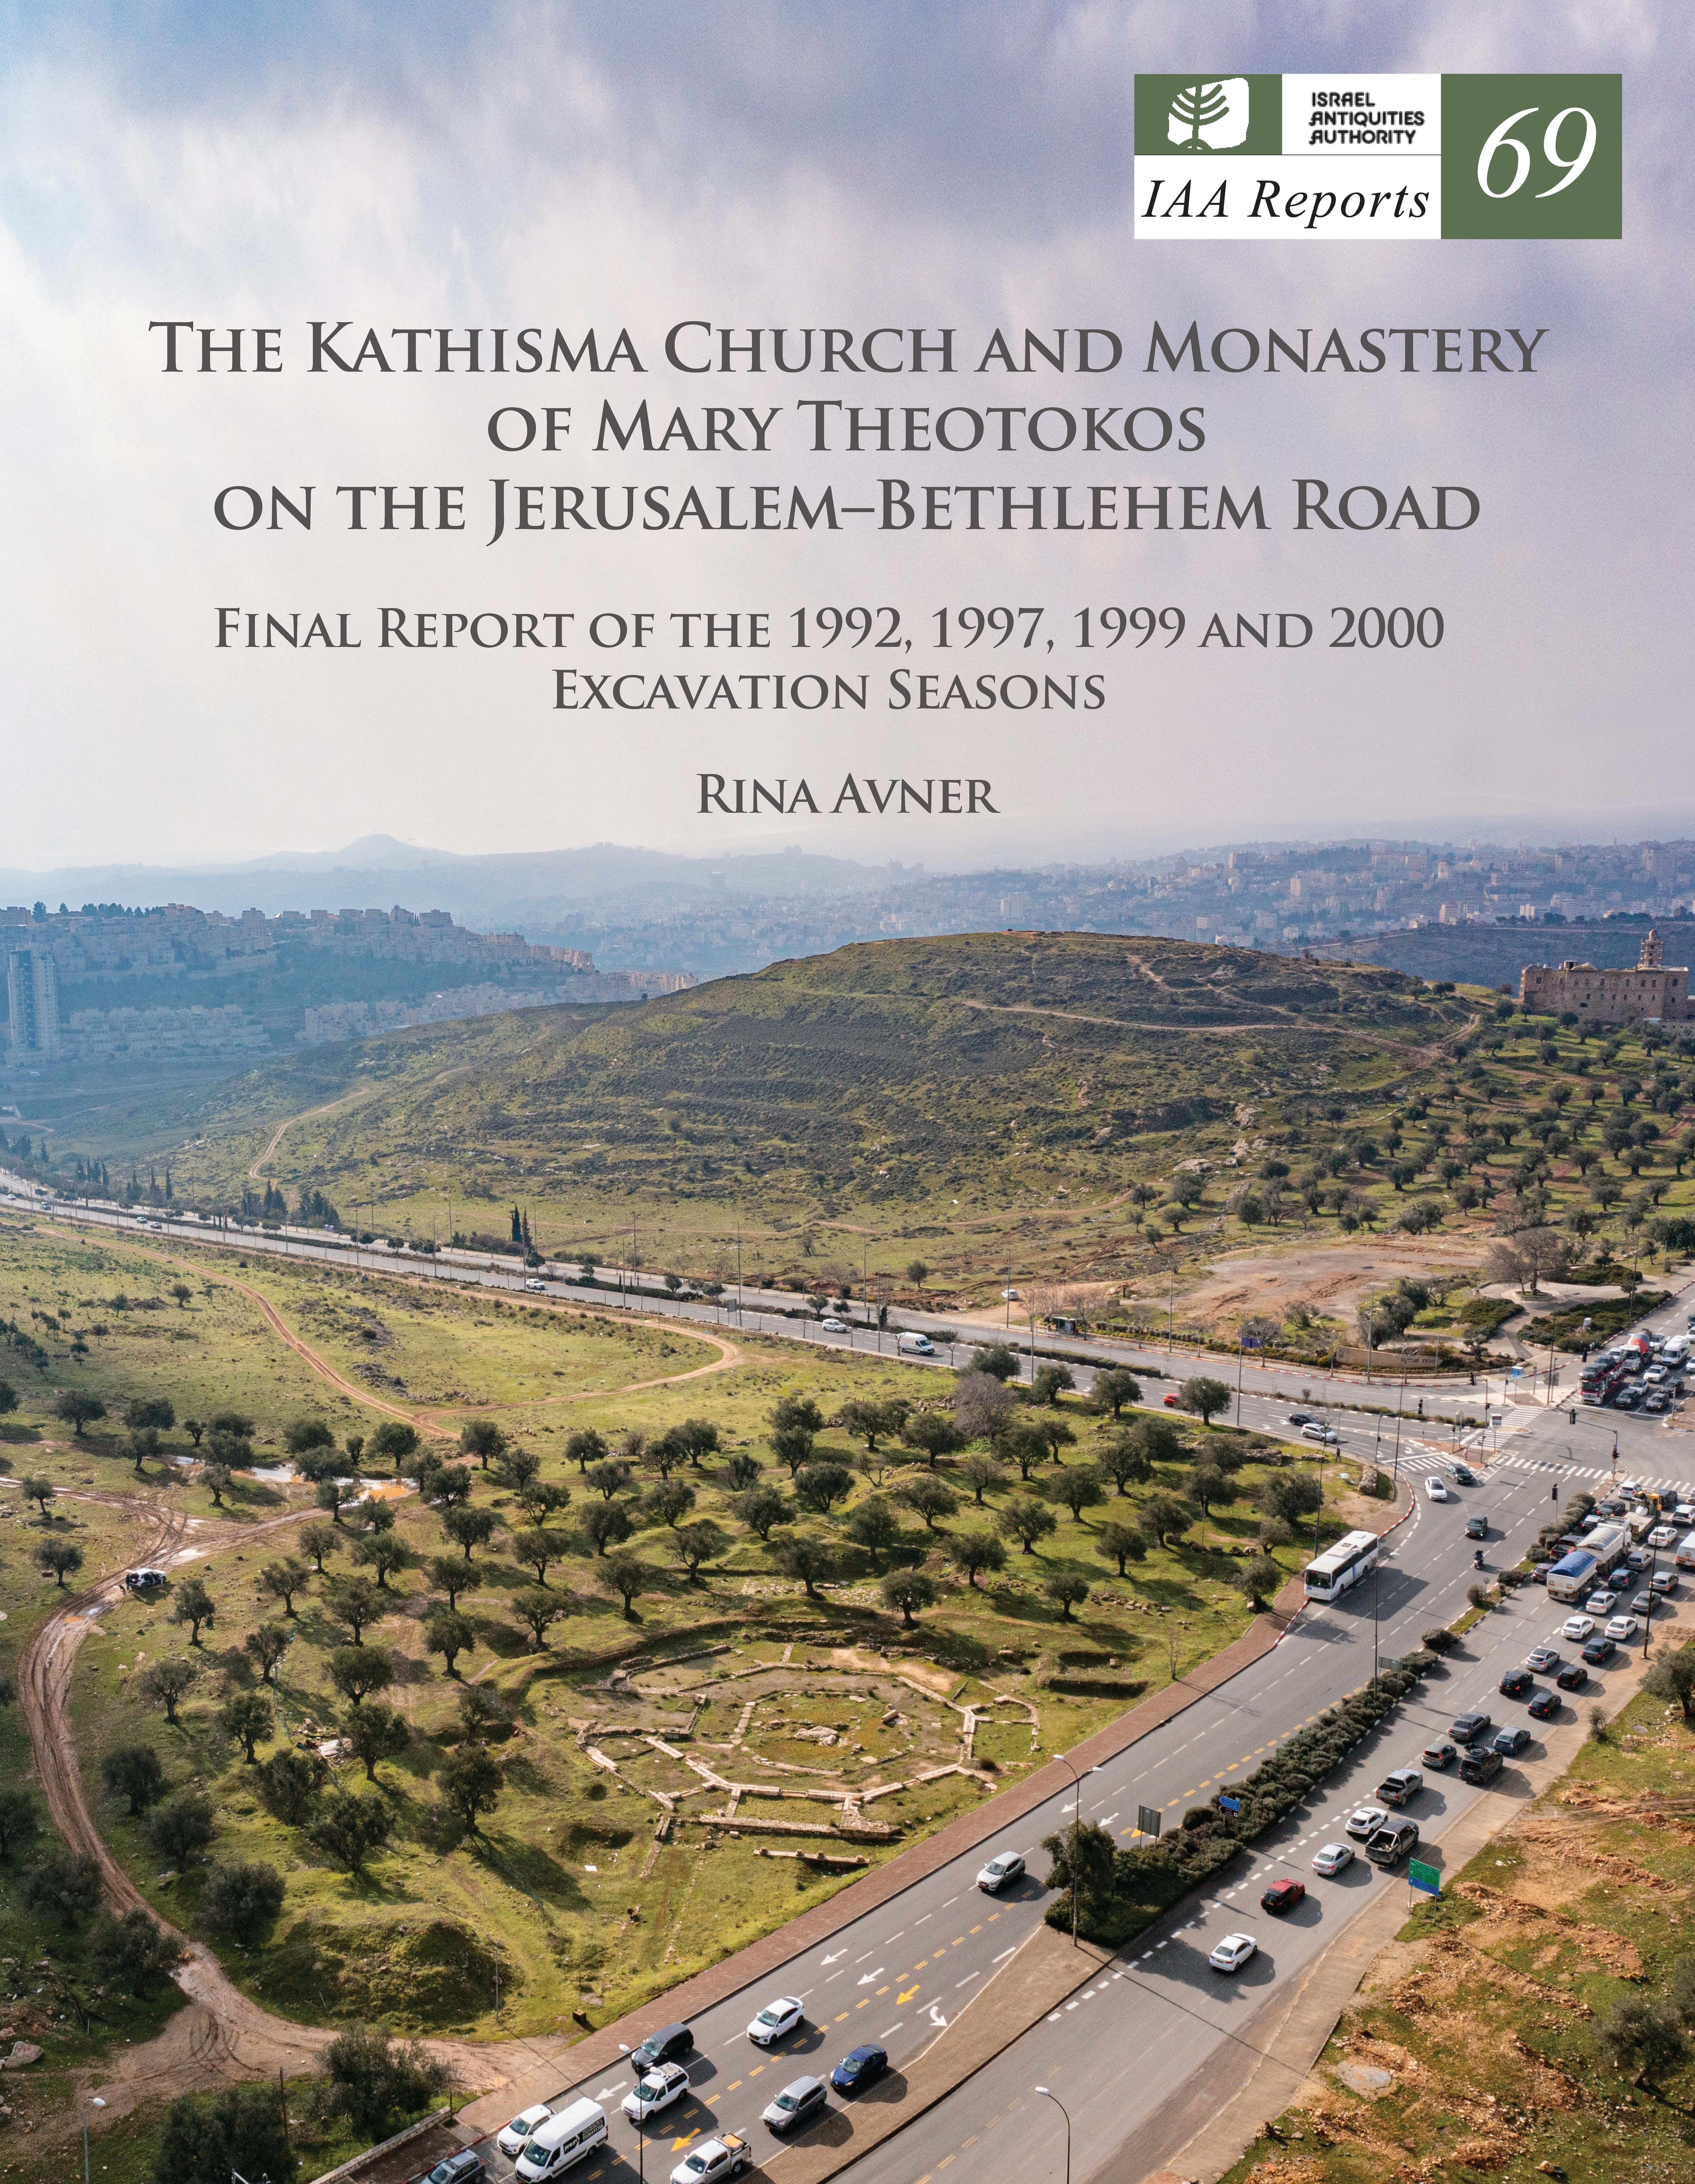 IAA Reports 69, כנסיית הקתיסמה והמנזר של מארי תיאוטוקוס שבדרך ירושלים - בית לחם